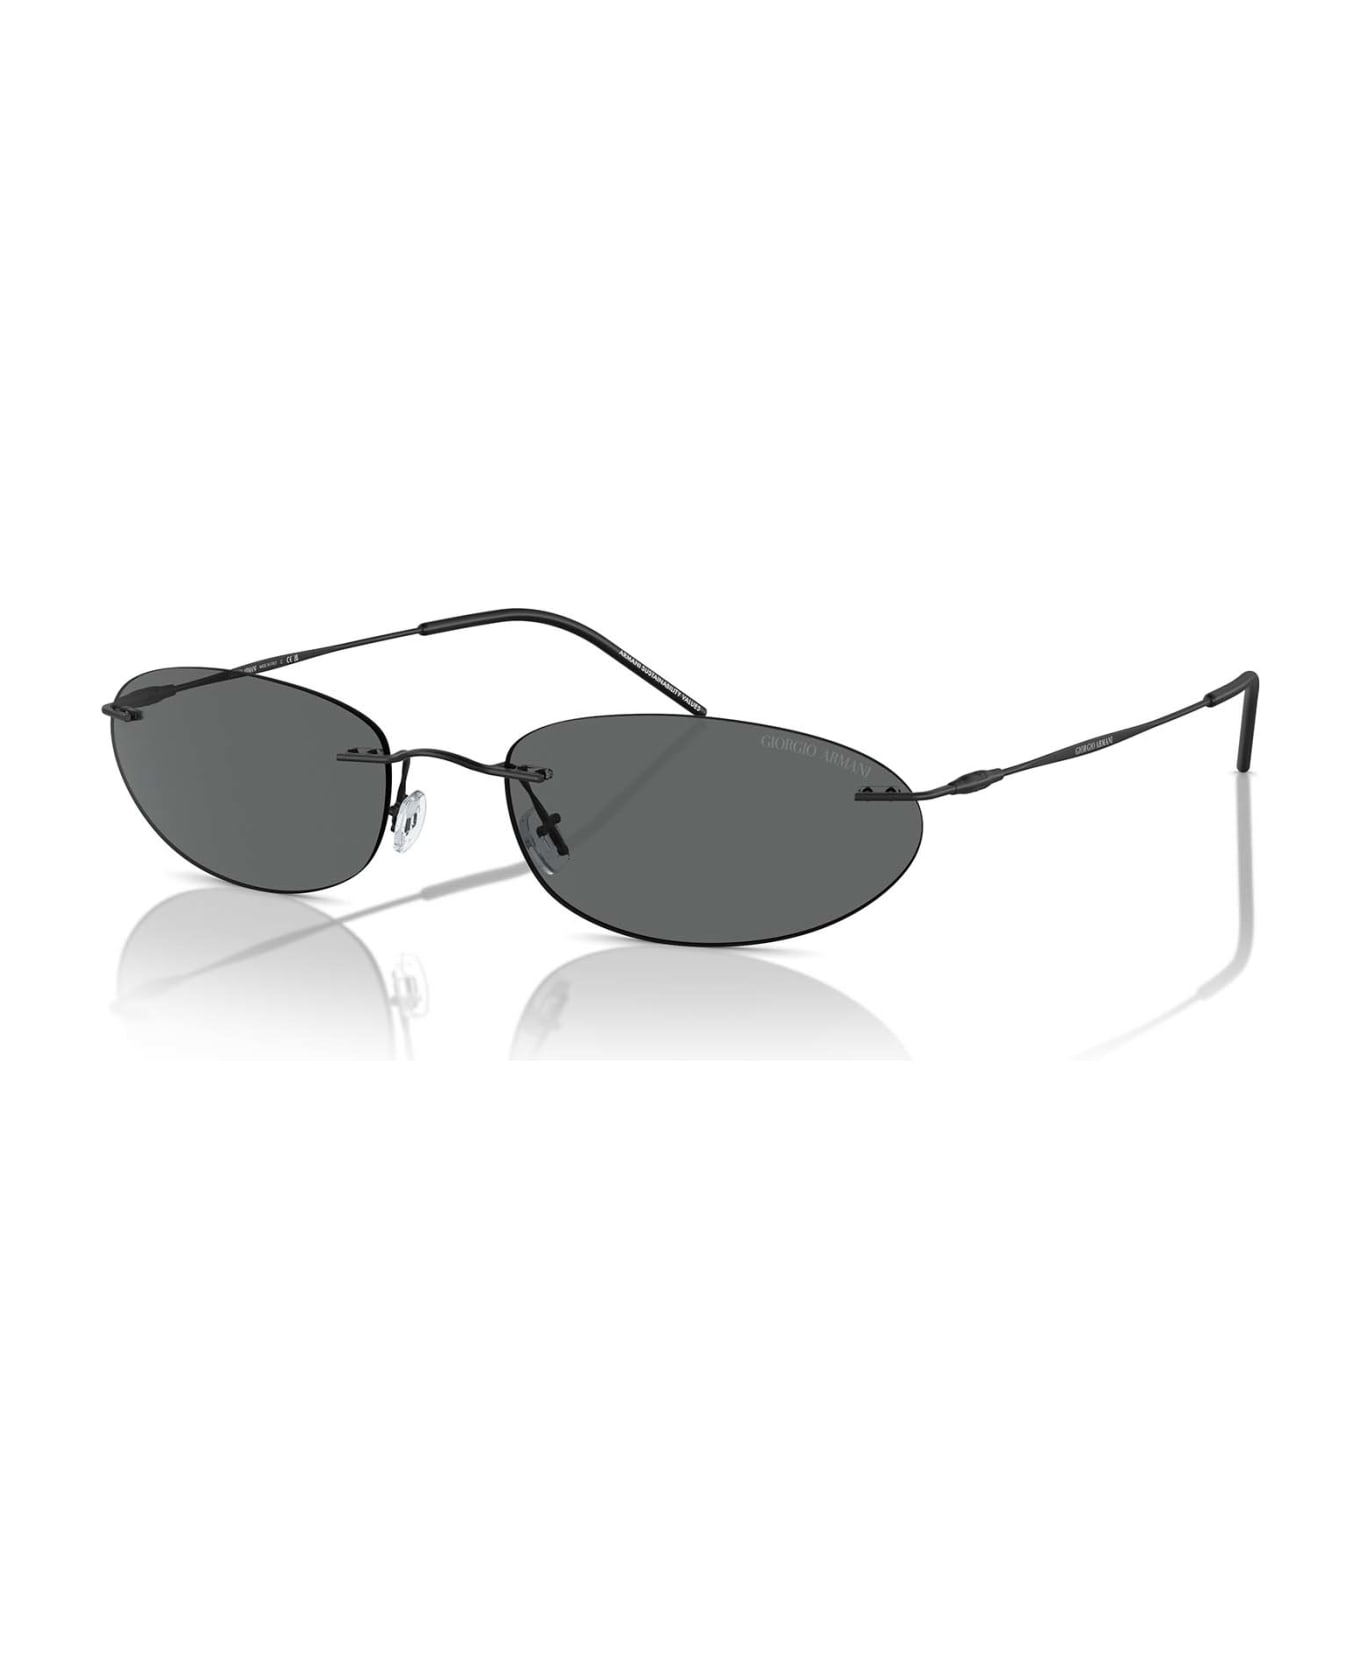 Giorgio Armani Ar1508m Matte Black Sunglasses - Matte Black サングラス